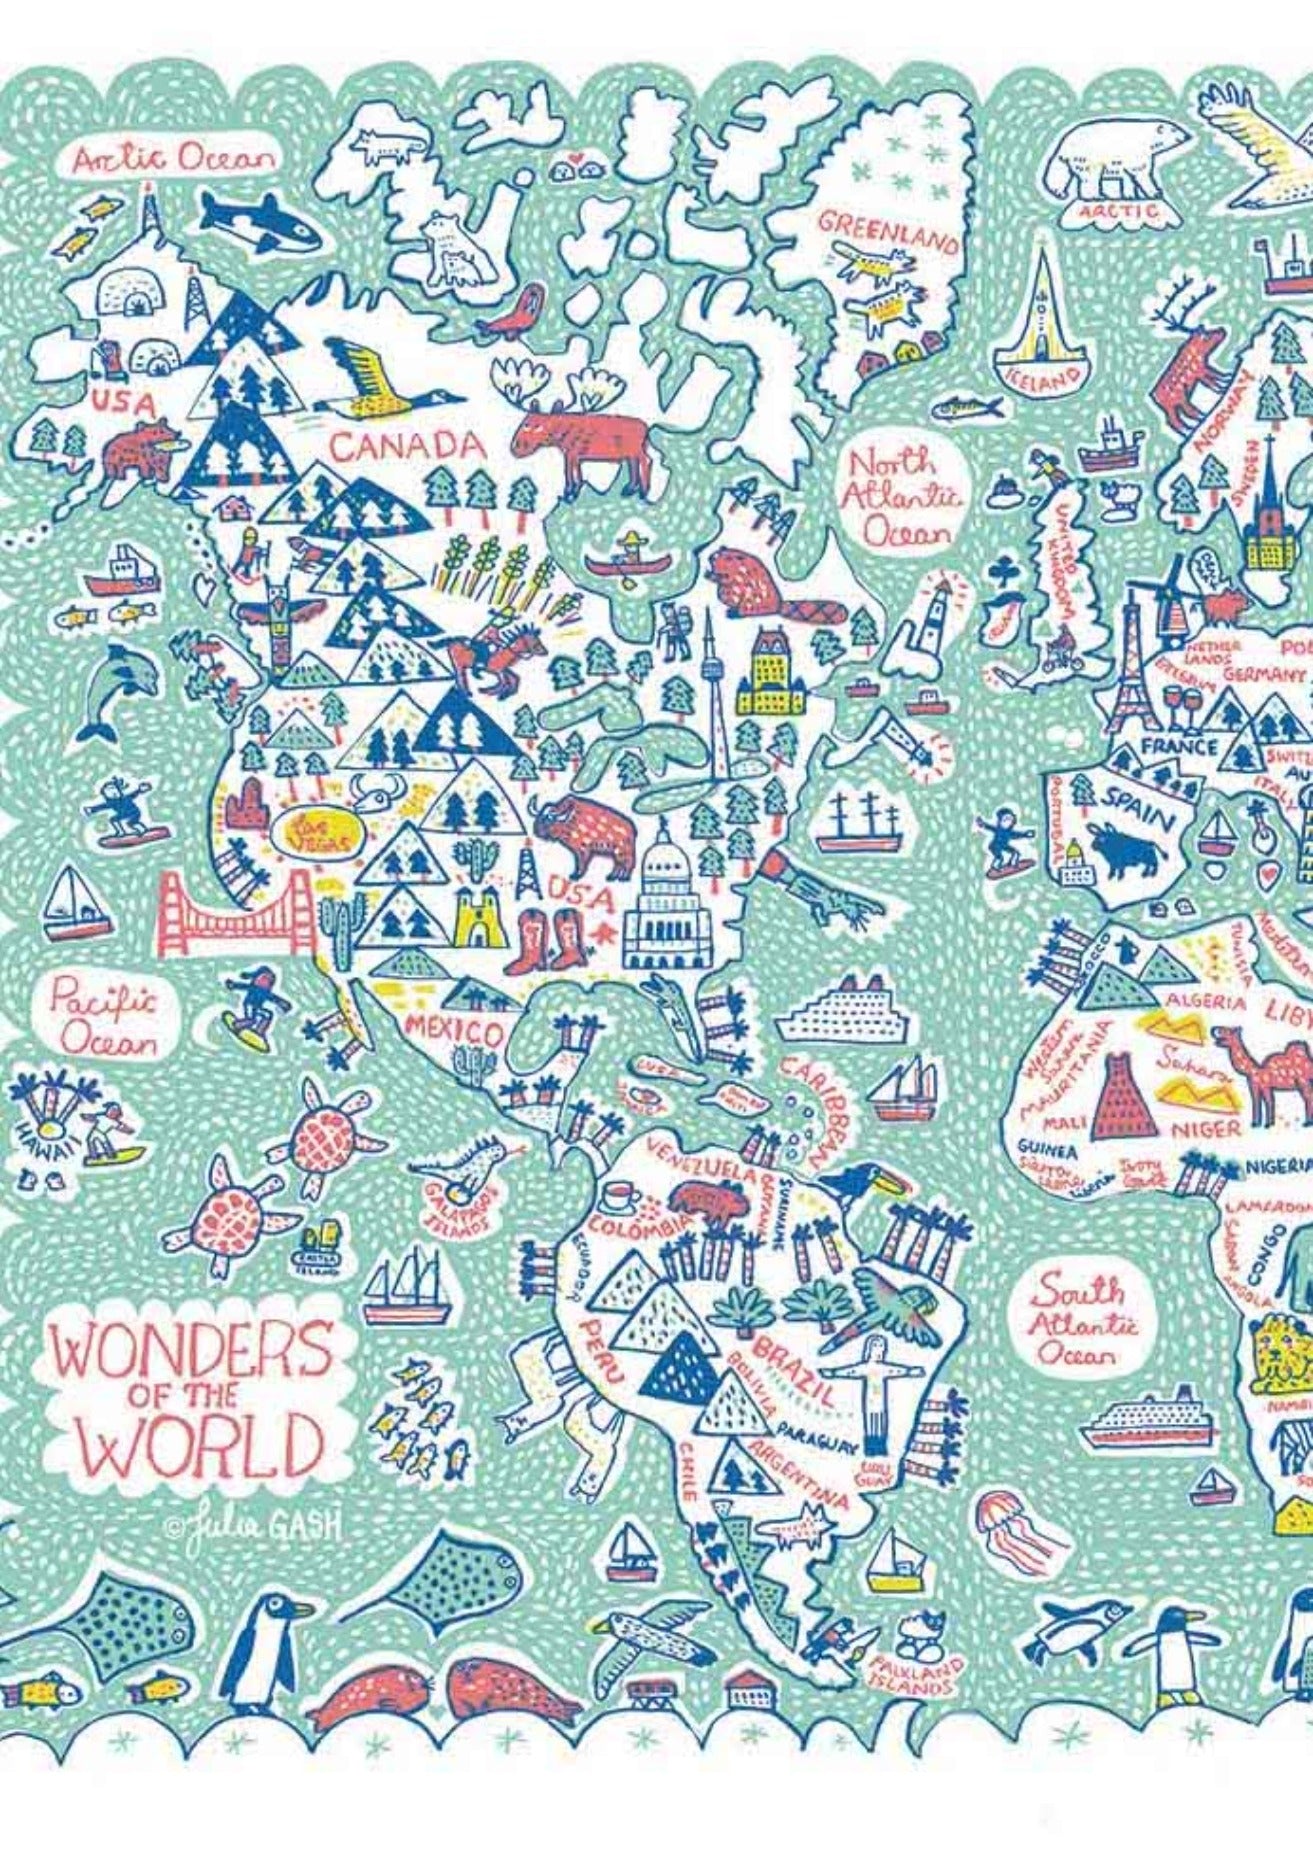 World Map Postcard - Julia Gash